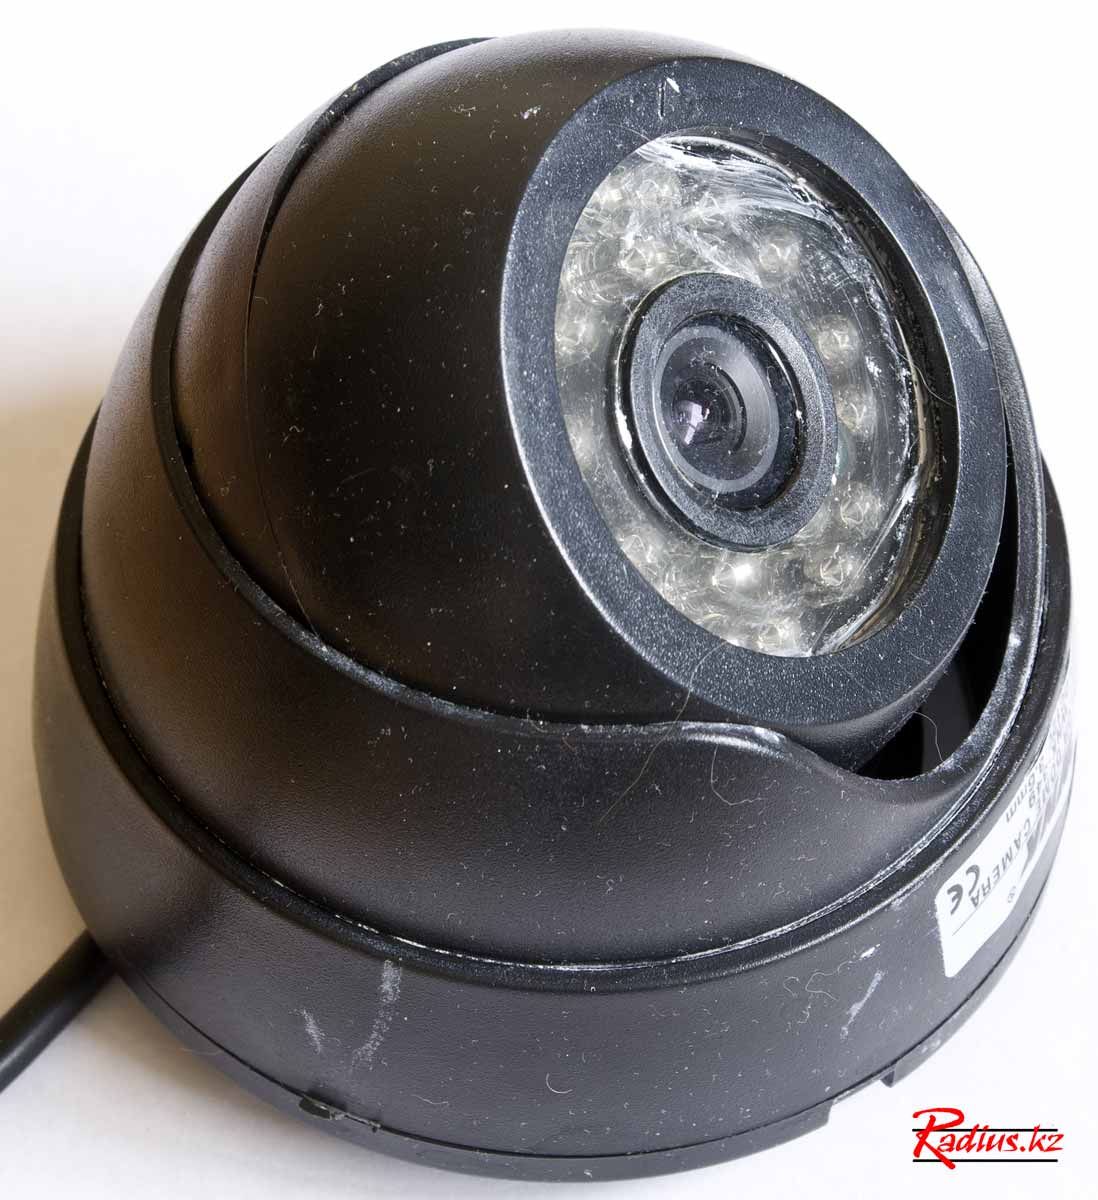 обзор купольной камеры видеонаблюдения WNK-349